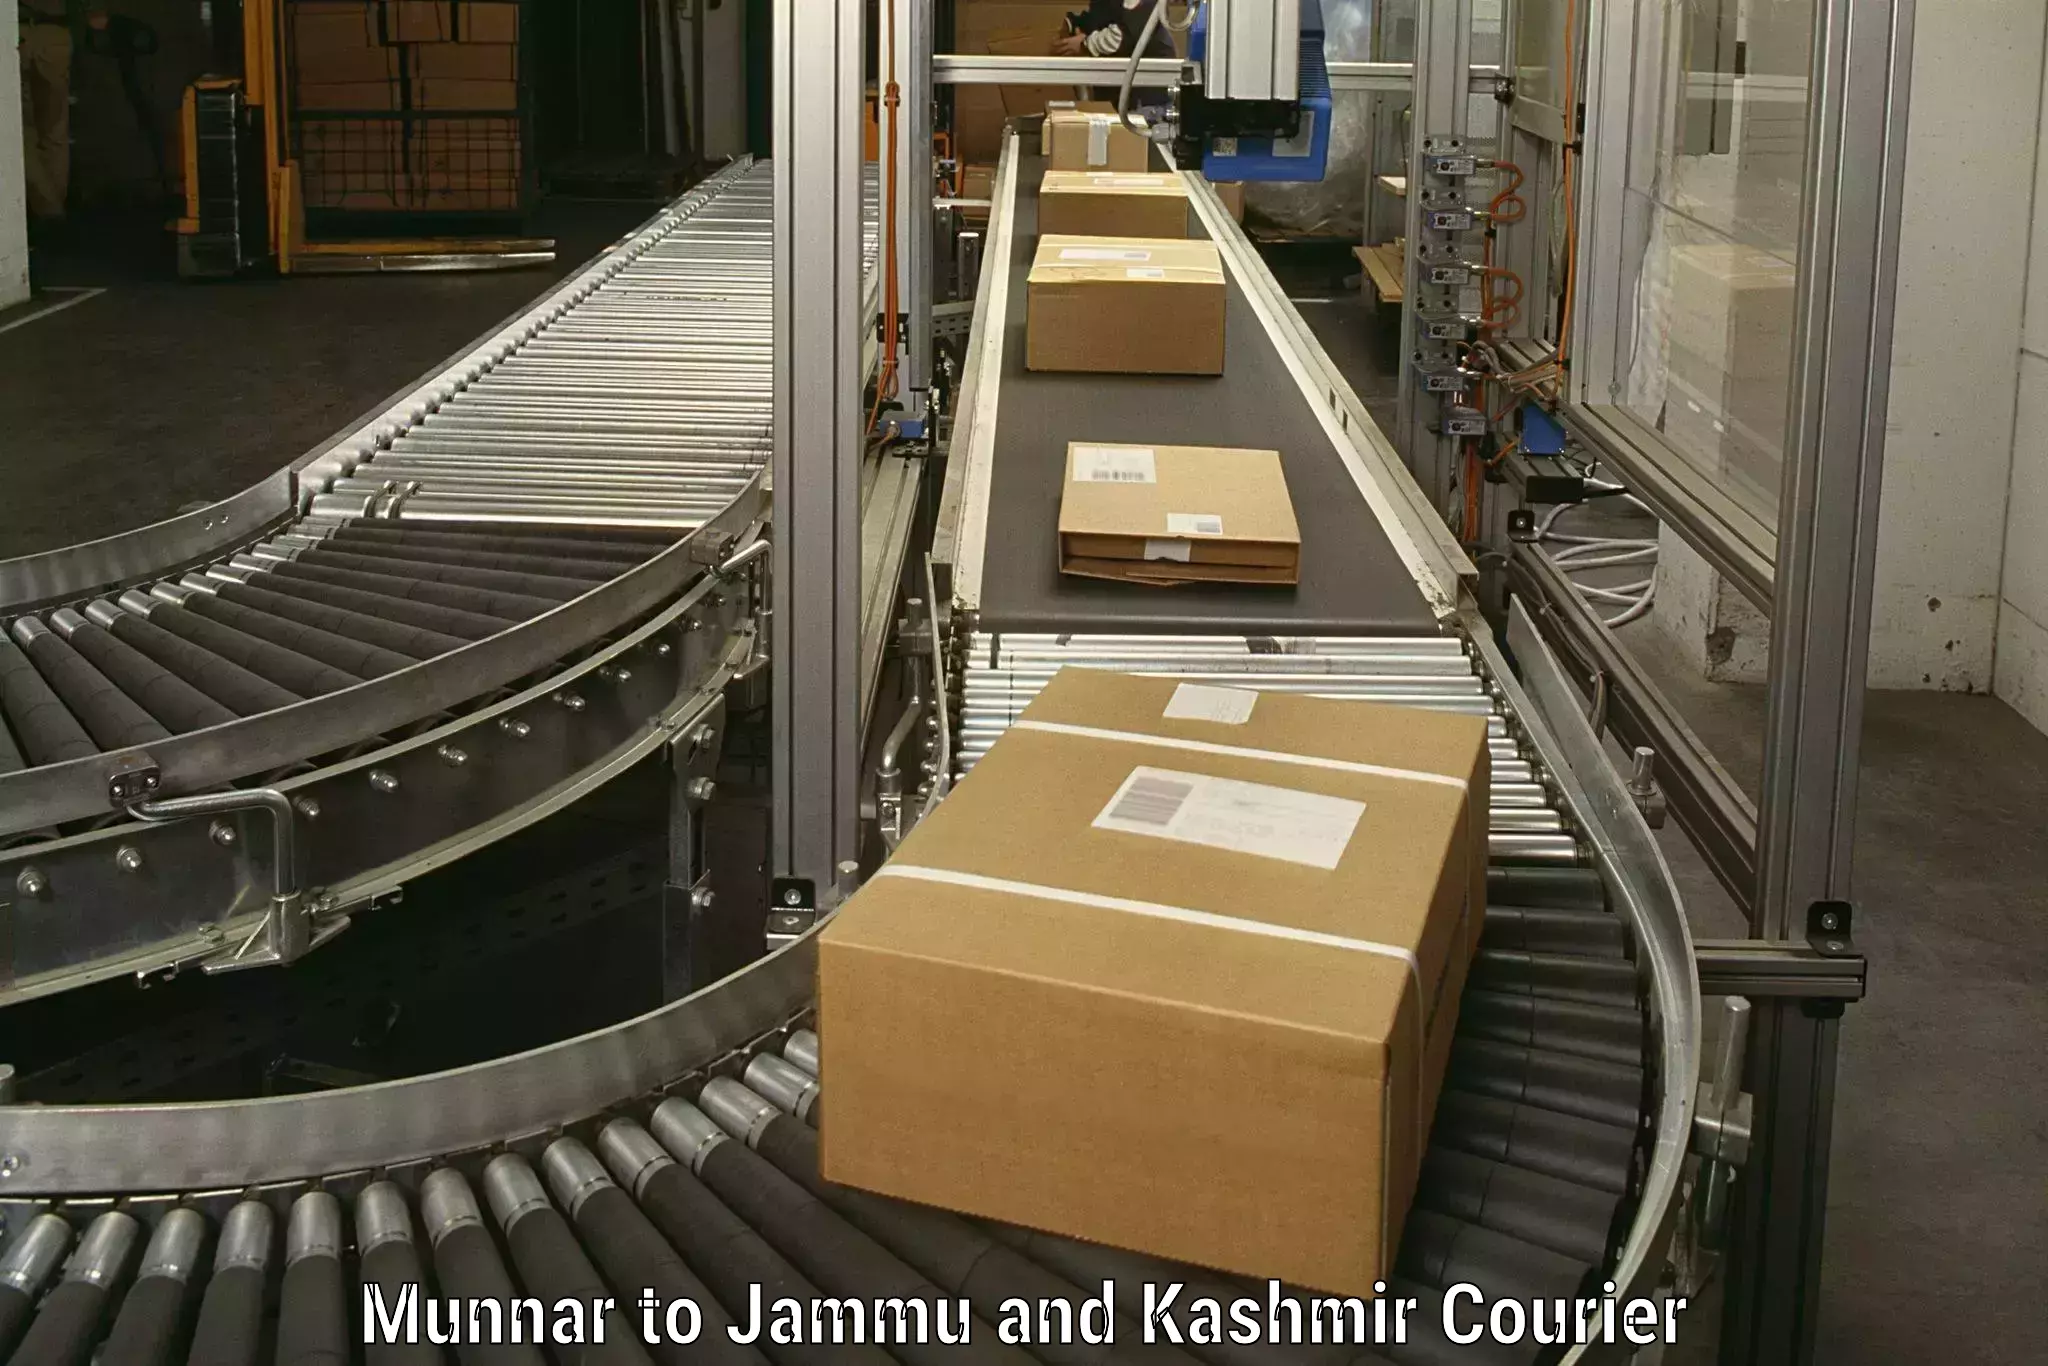 Professional moving company Munnar to Katra